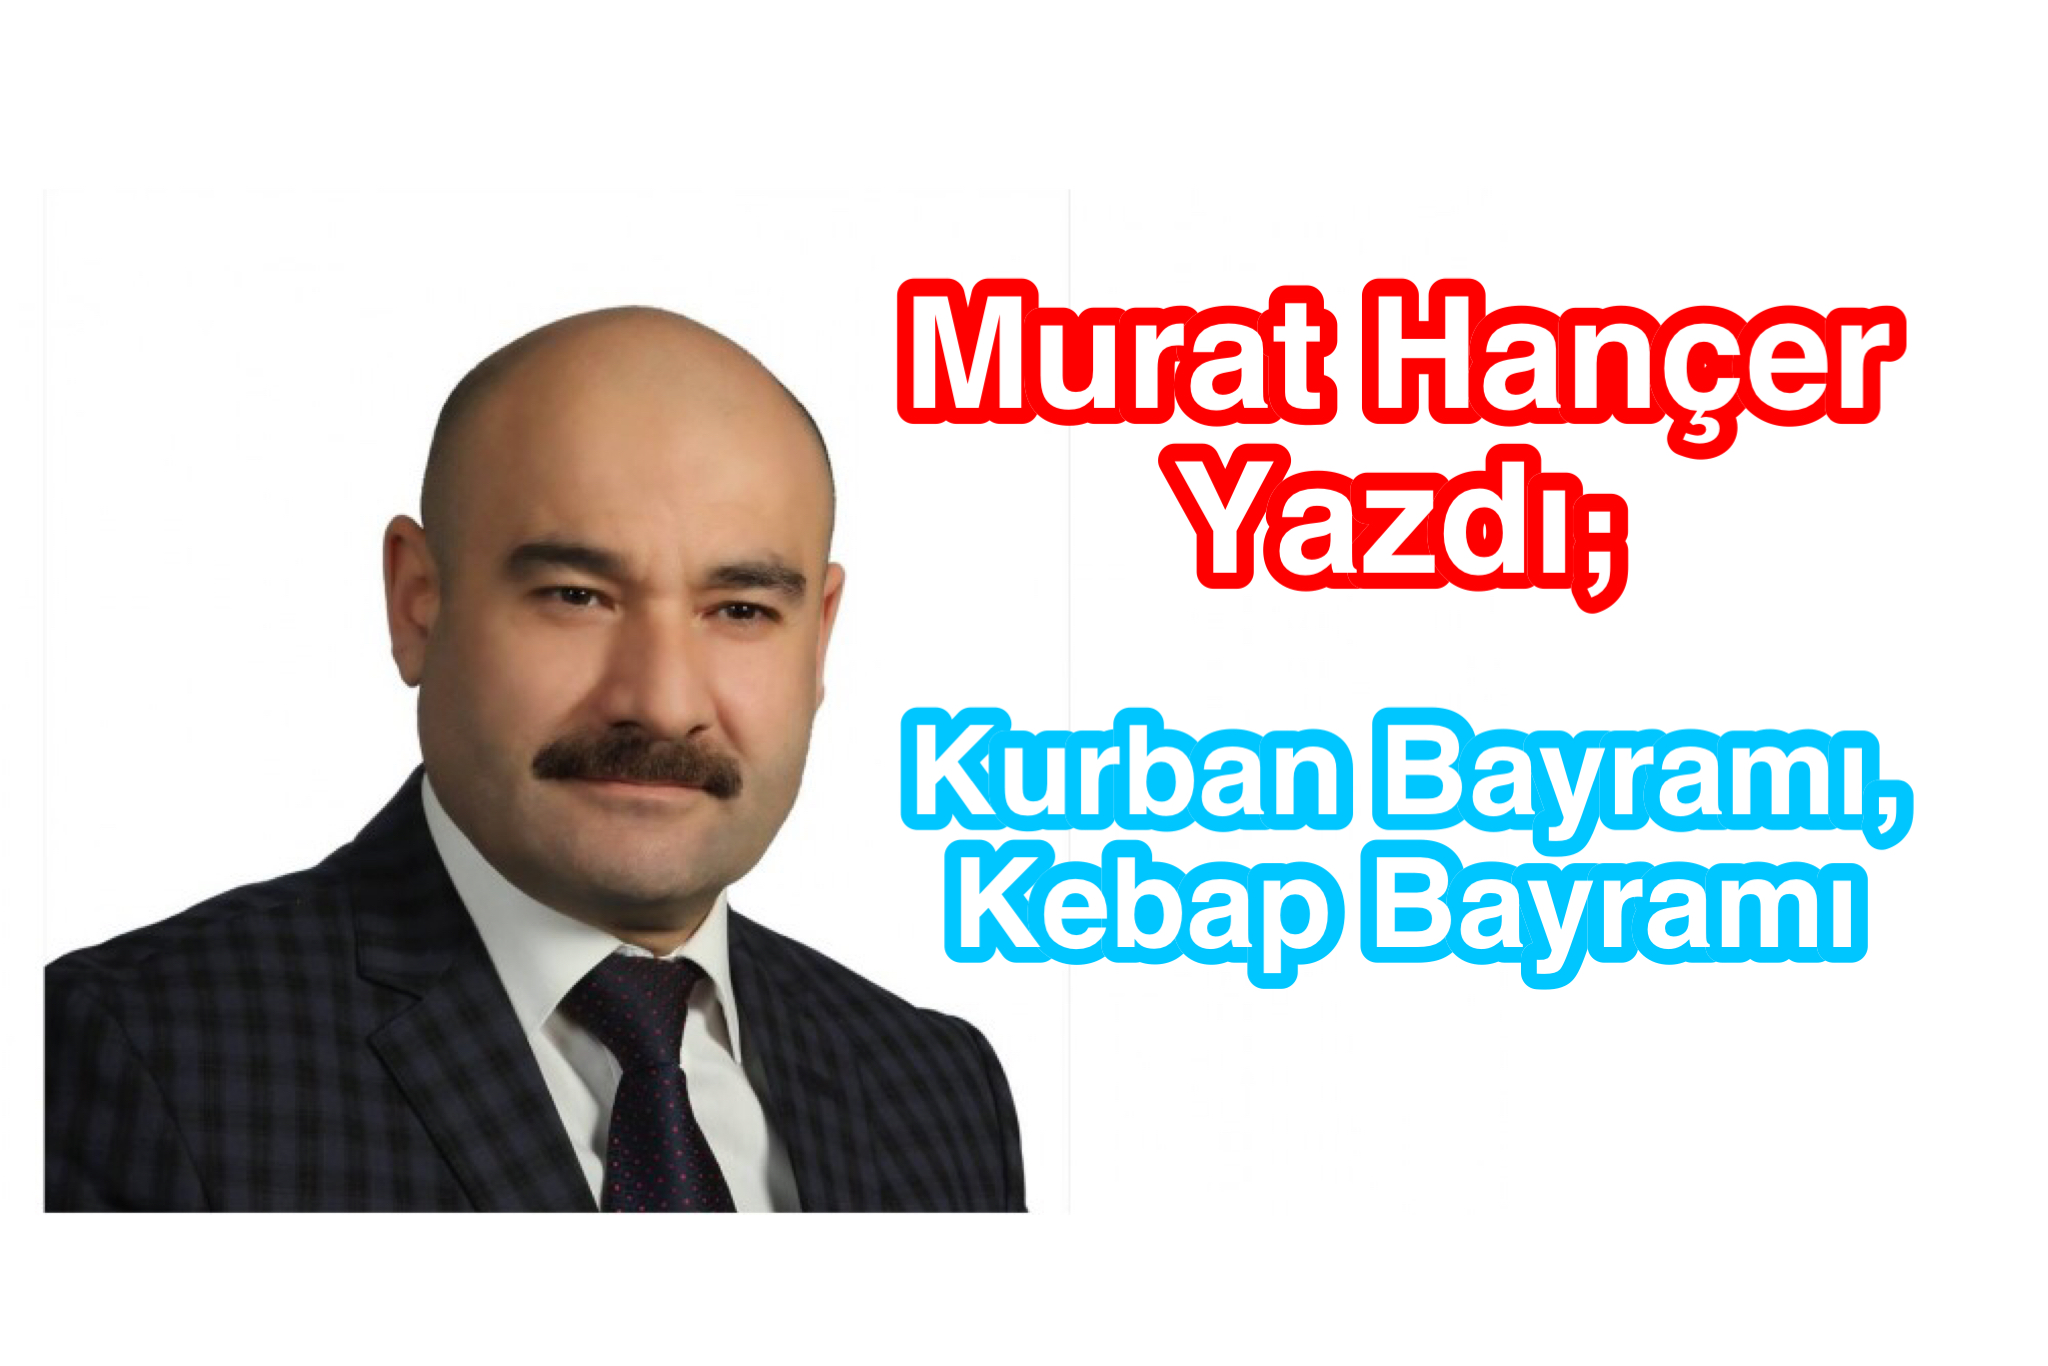 Murat Hançer yazdı ; Kurban Bayramı, Kebap Bayramı